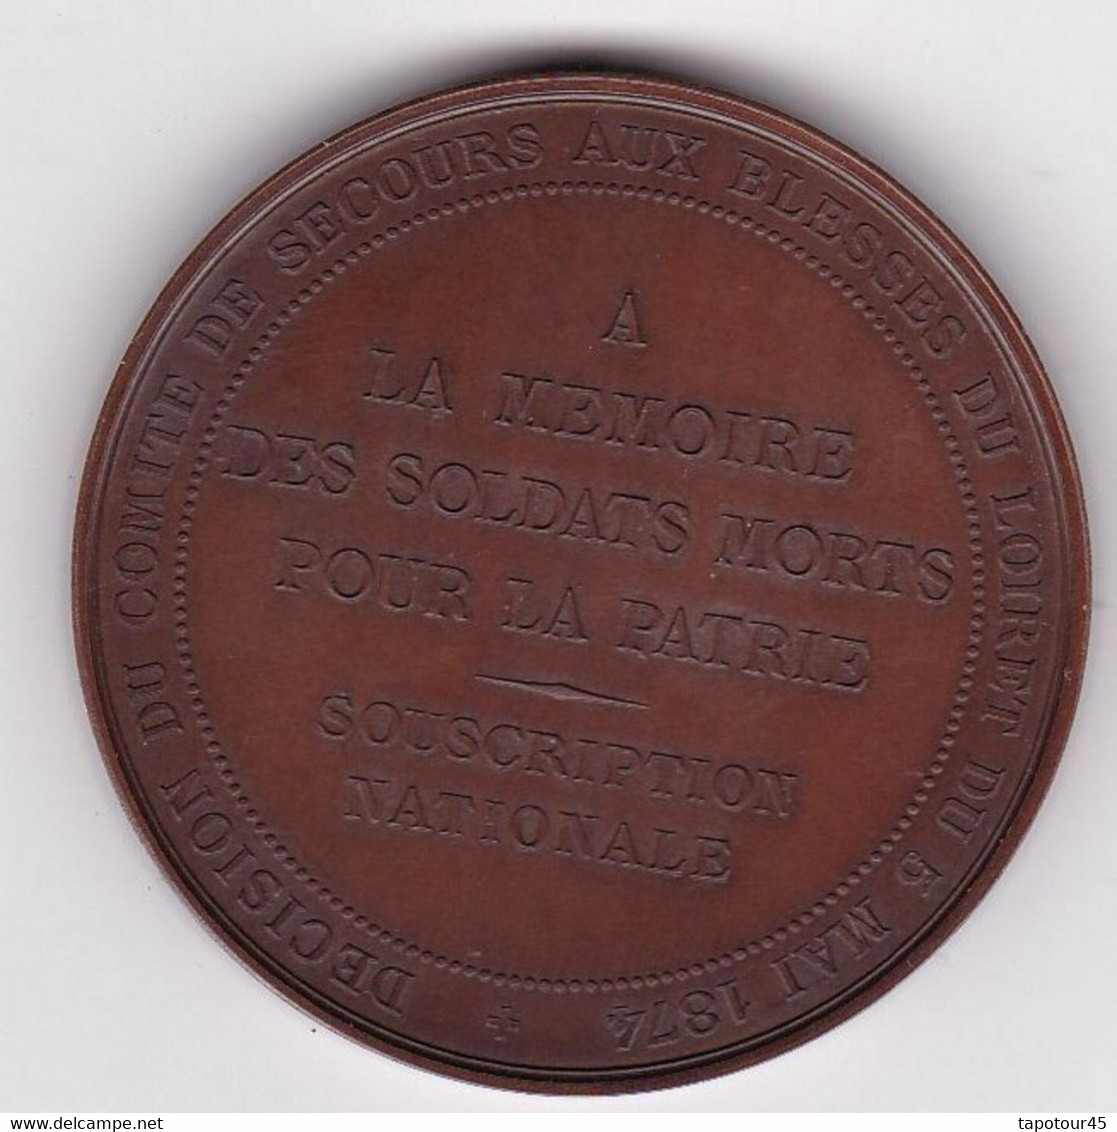 0 1) Très Belle Médaille De "Coulmiers 1870"1874"  Signé "Coquet /Lagrange" Réf. ANC 82 A (Rare Dans Son écrin - Frankreich